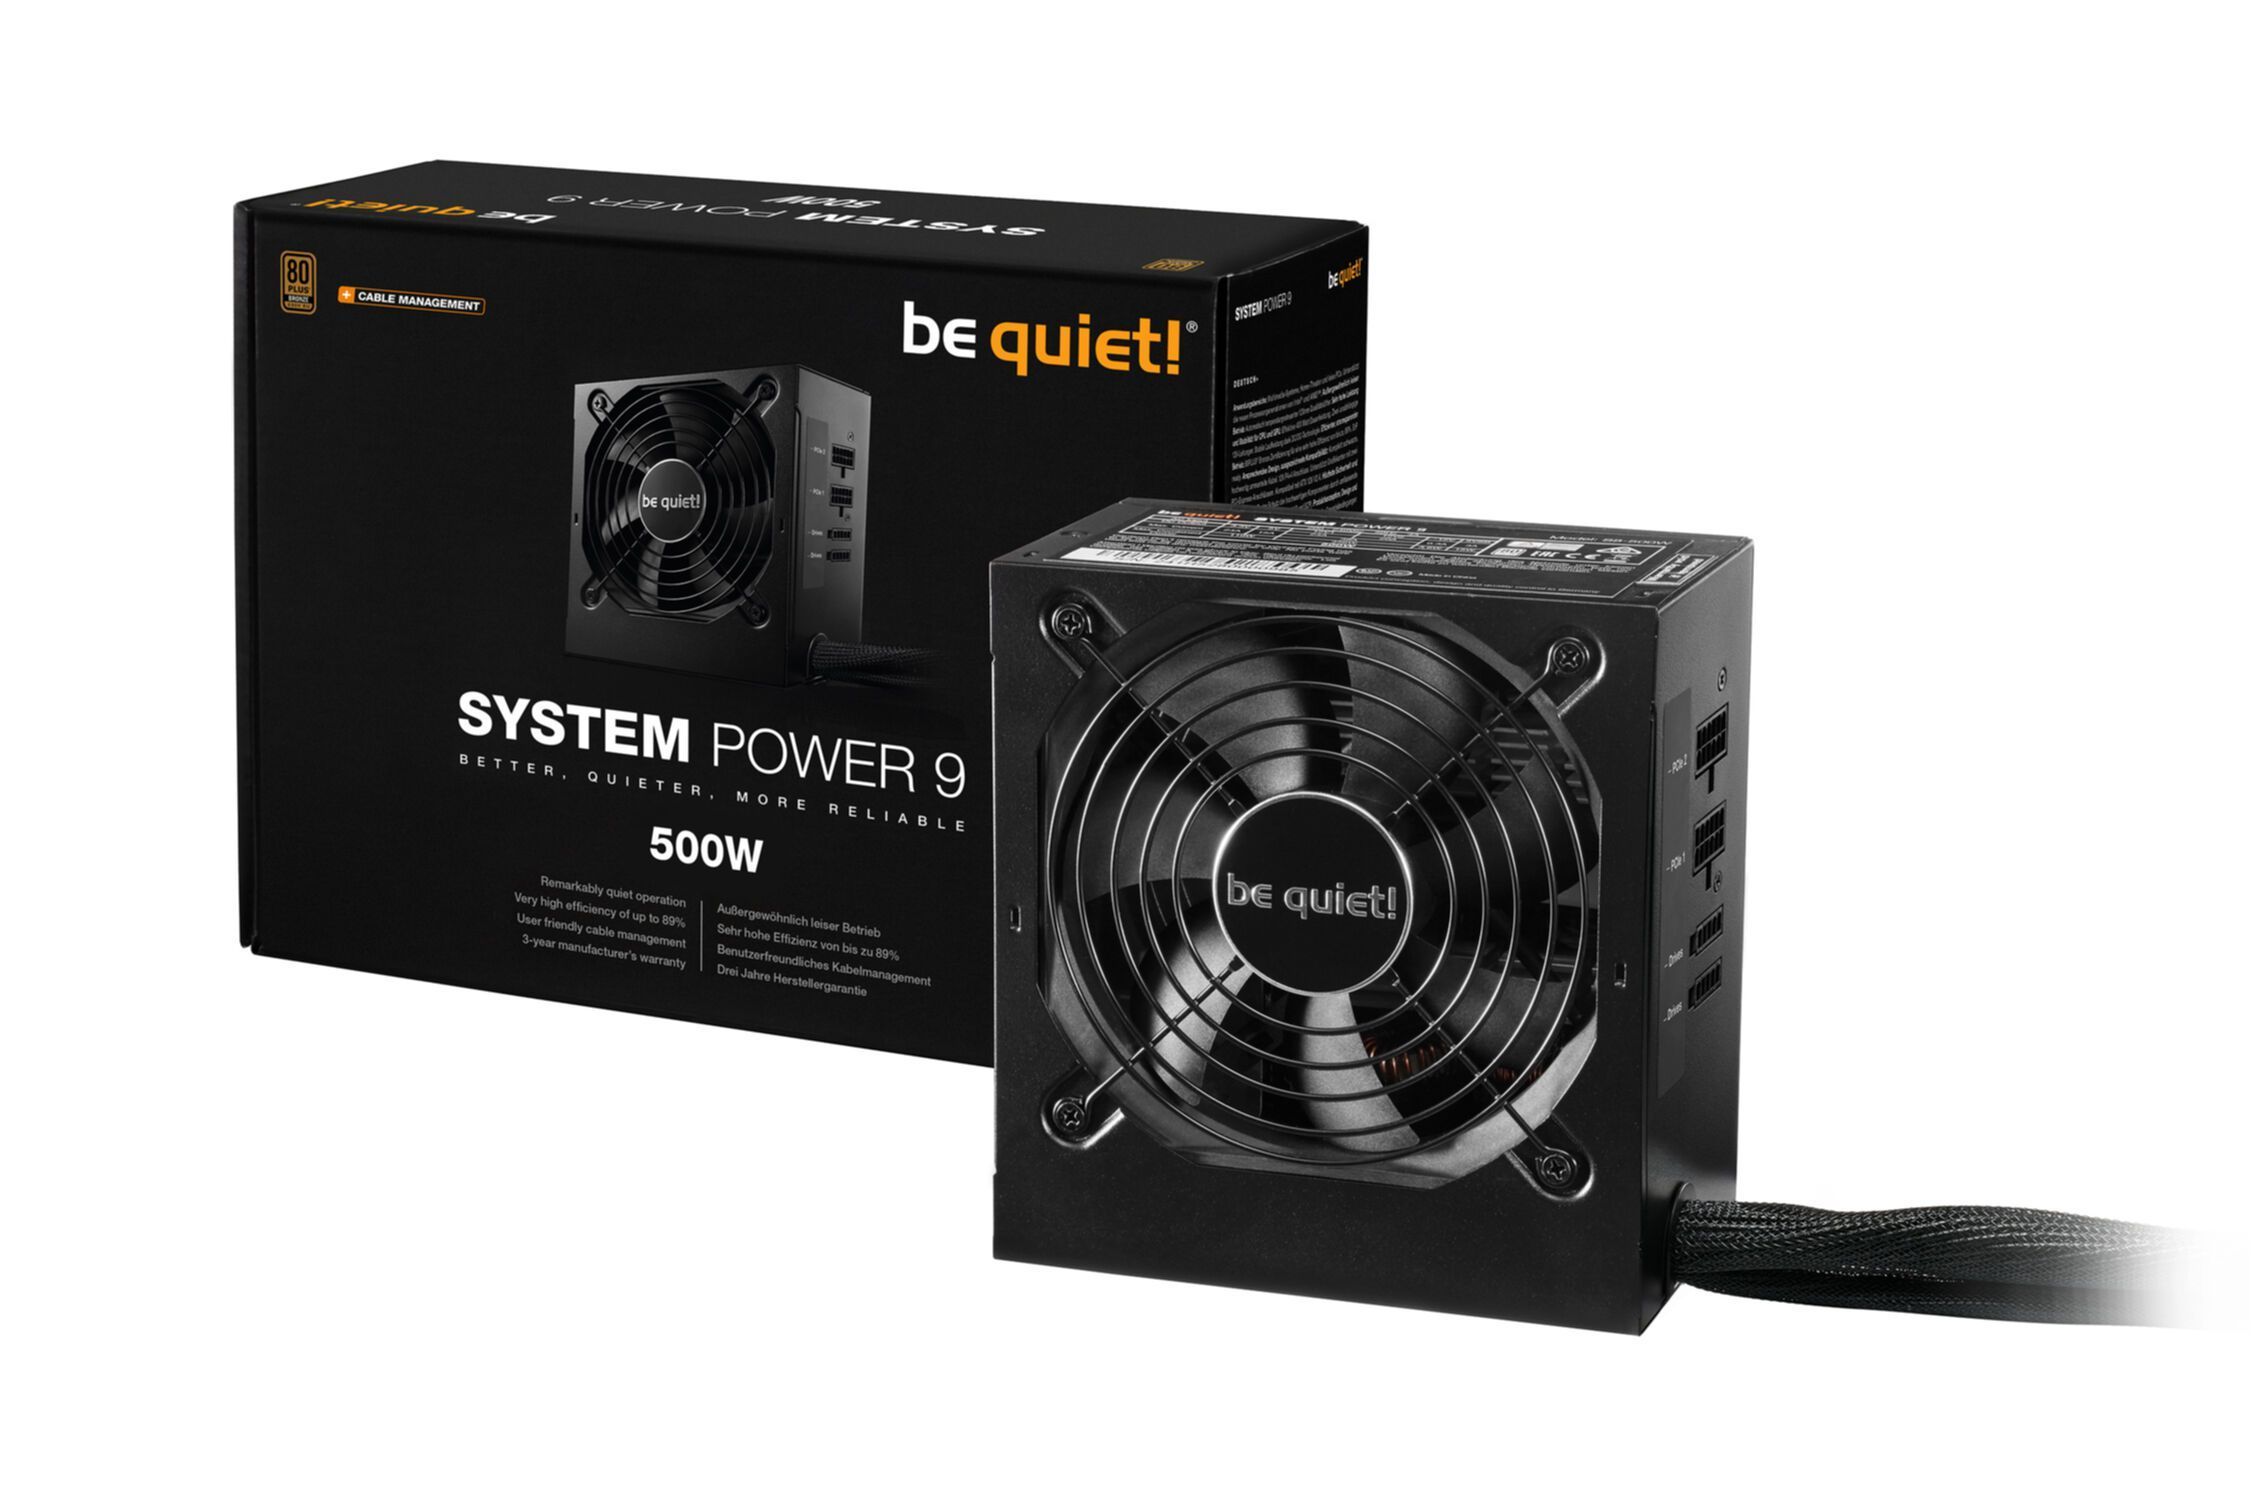 CM 500W Watt QUIET! System PC 9 Netzteil 500 Power , BE